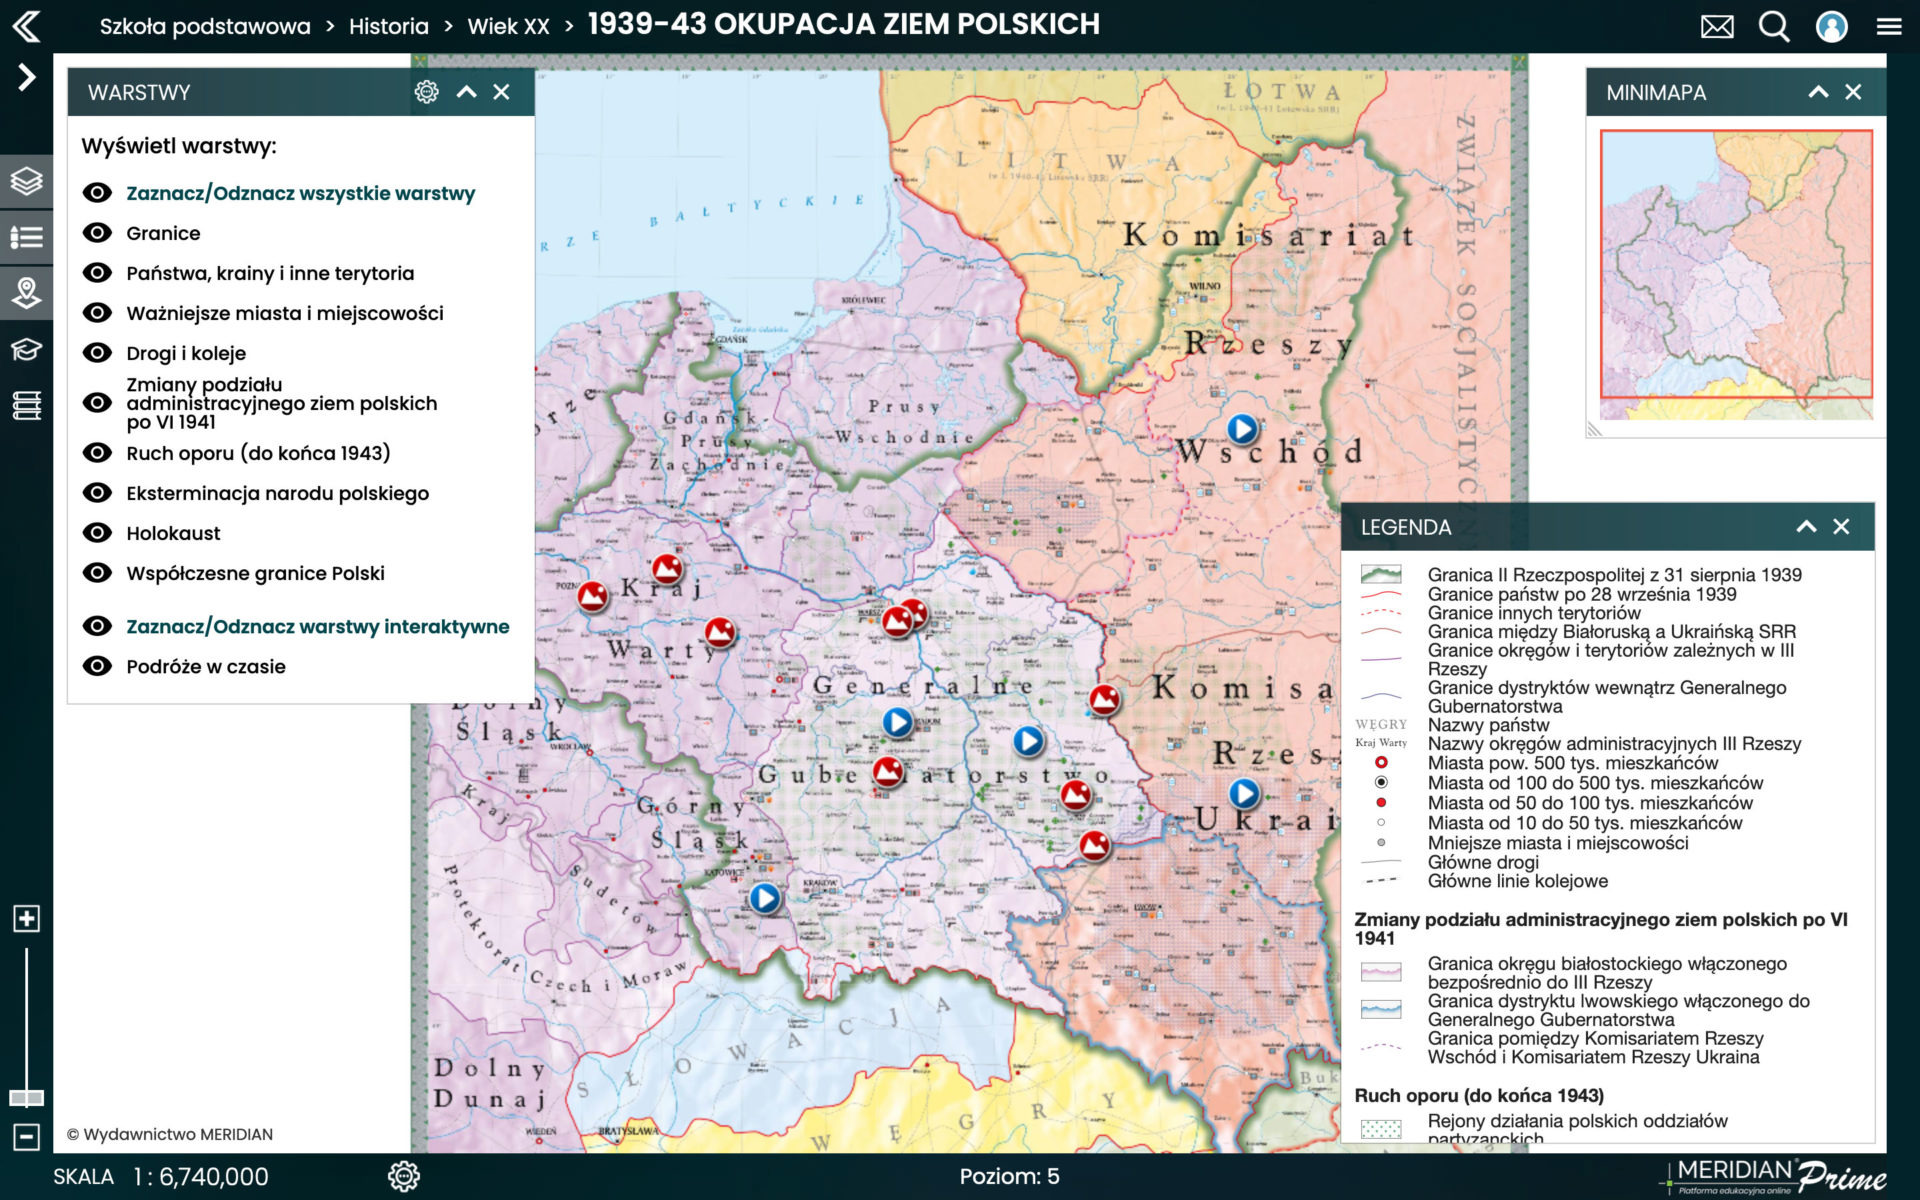 1939-1943 Okupacja ziem polskich